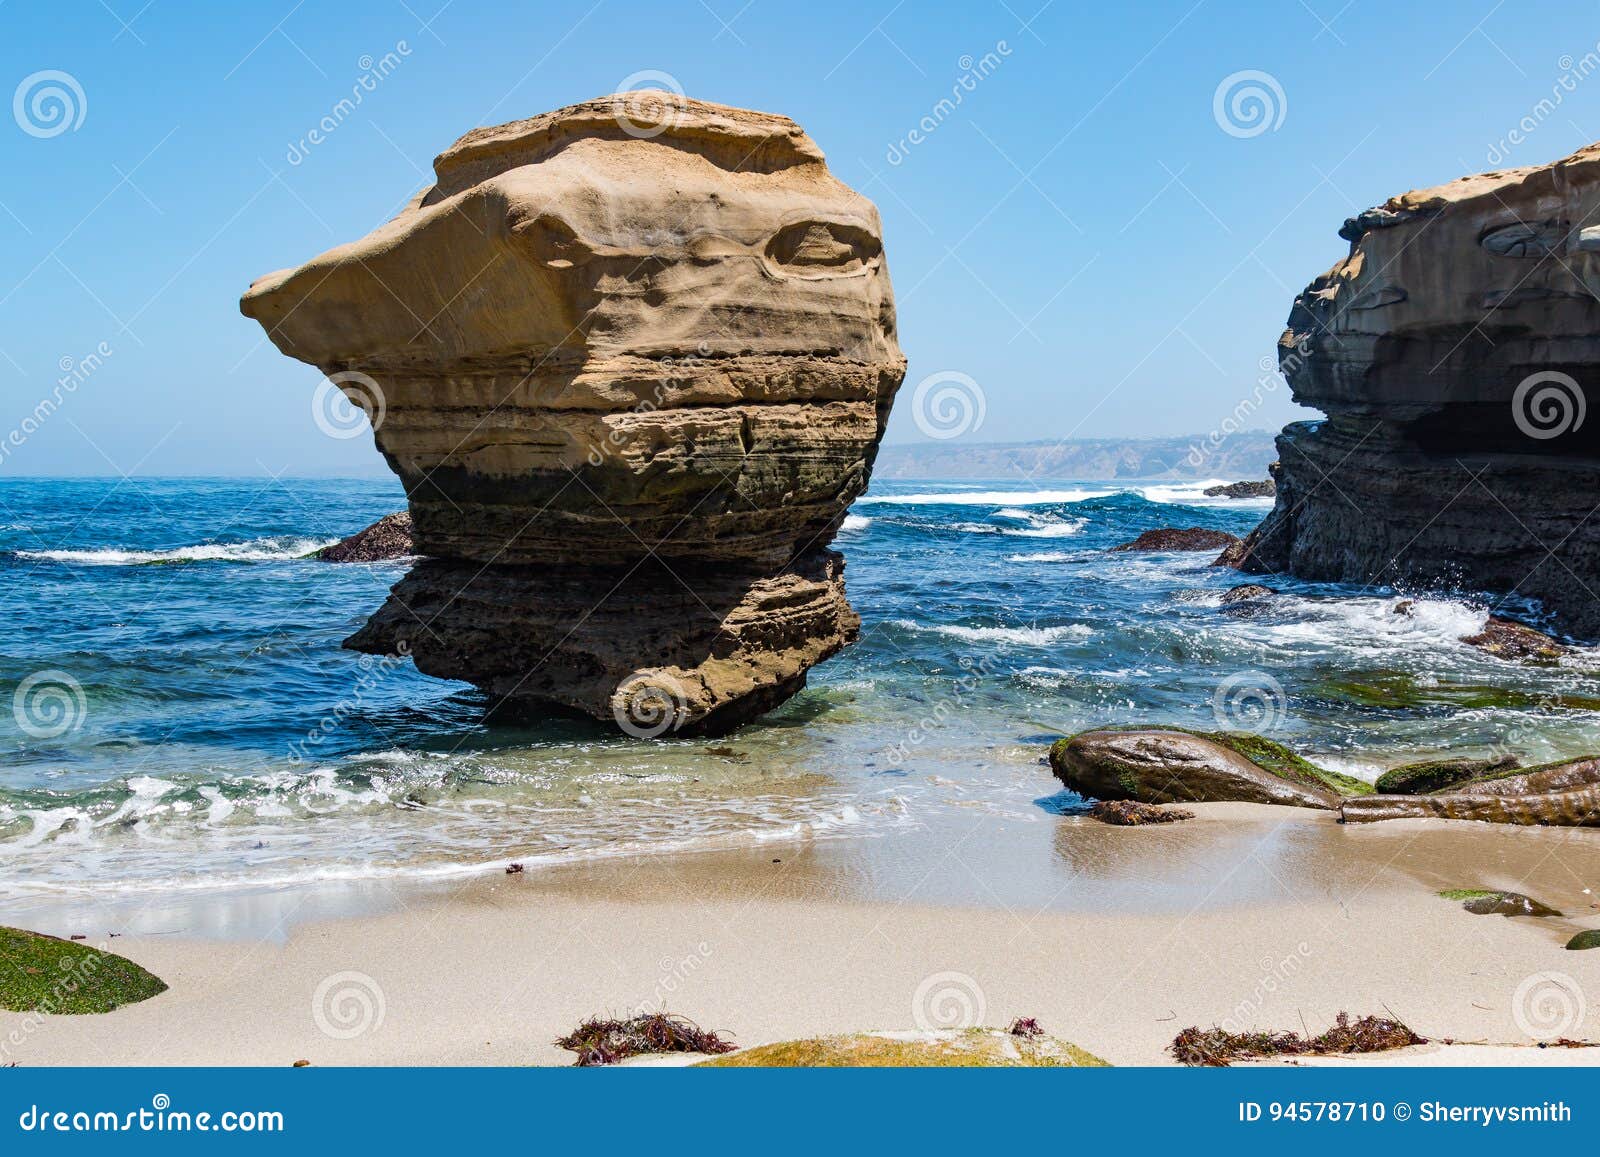 prominent rock formation in la jolla, california